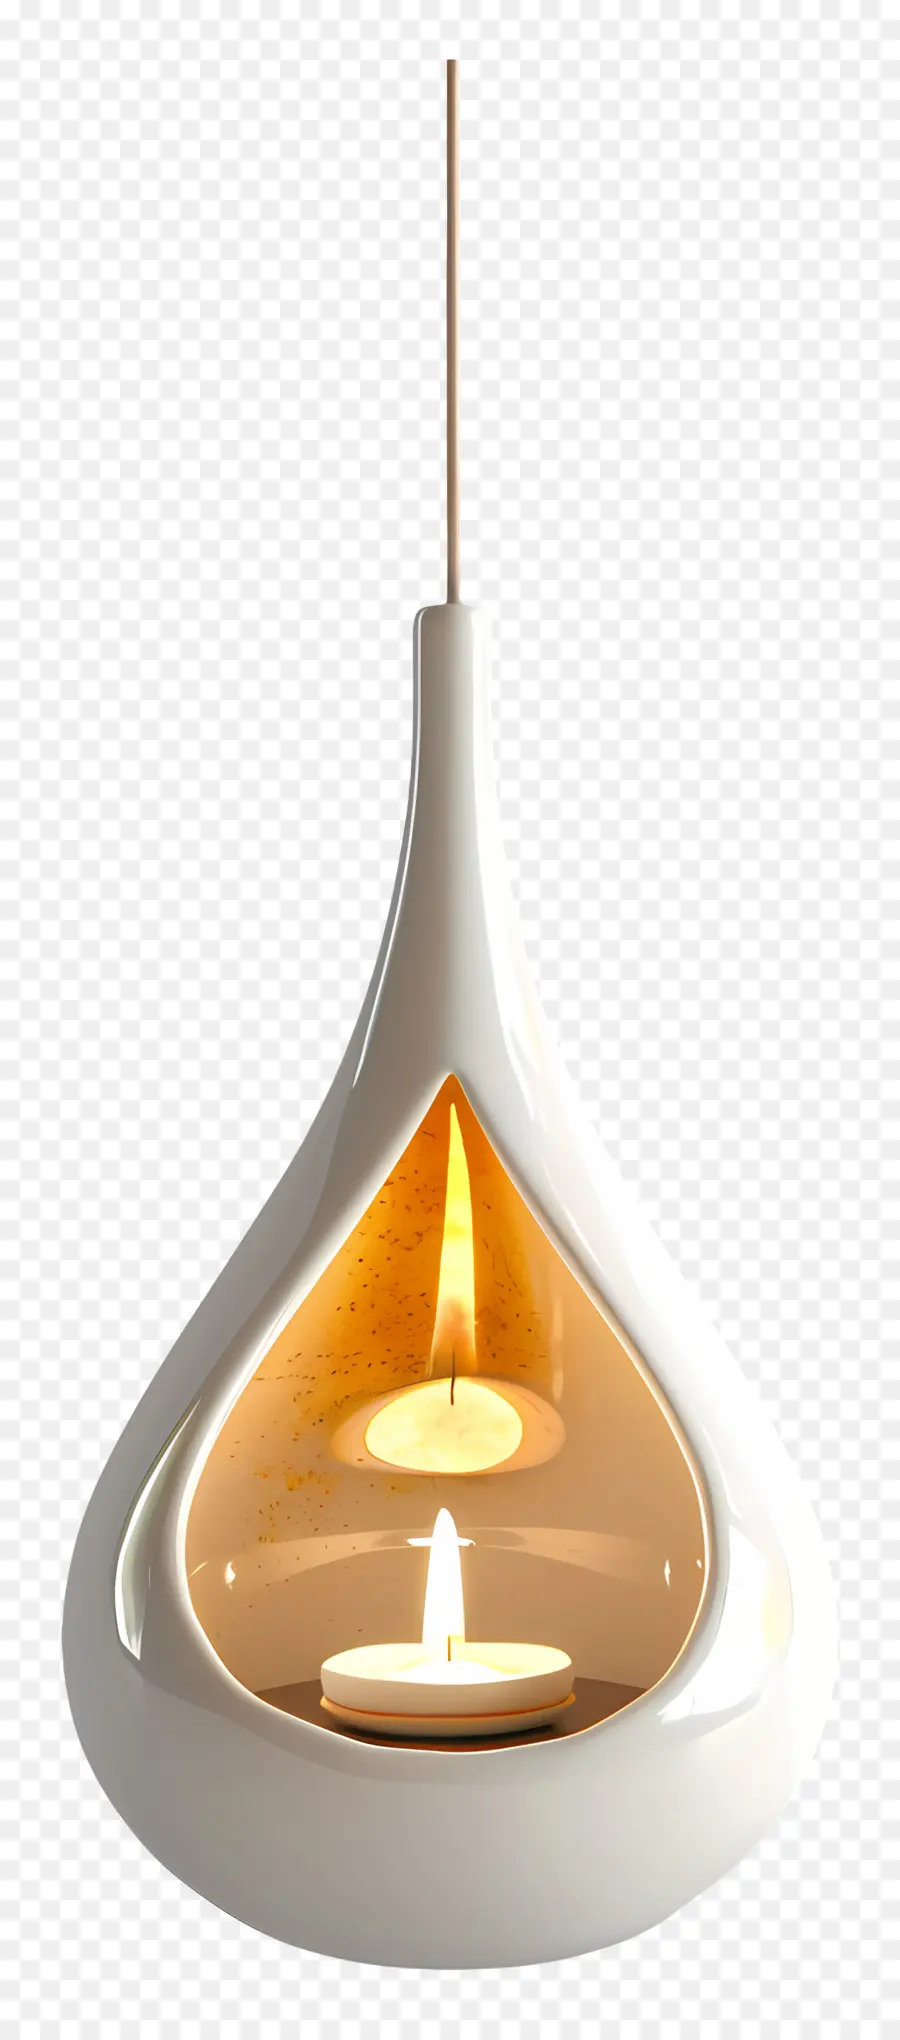 Giá treo đồ giữ ánh sáng gốm LIGHT LIGHT LIGSTER - Ánh sáng hình nón bằng gốm trắng với ngọn lửa phát sáng bên trong